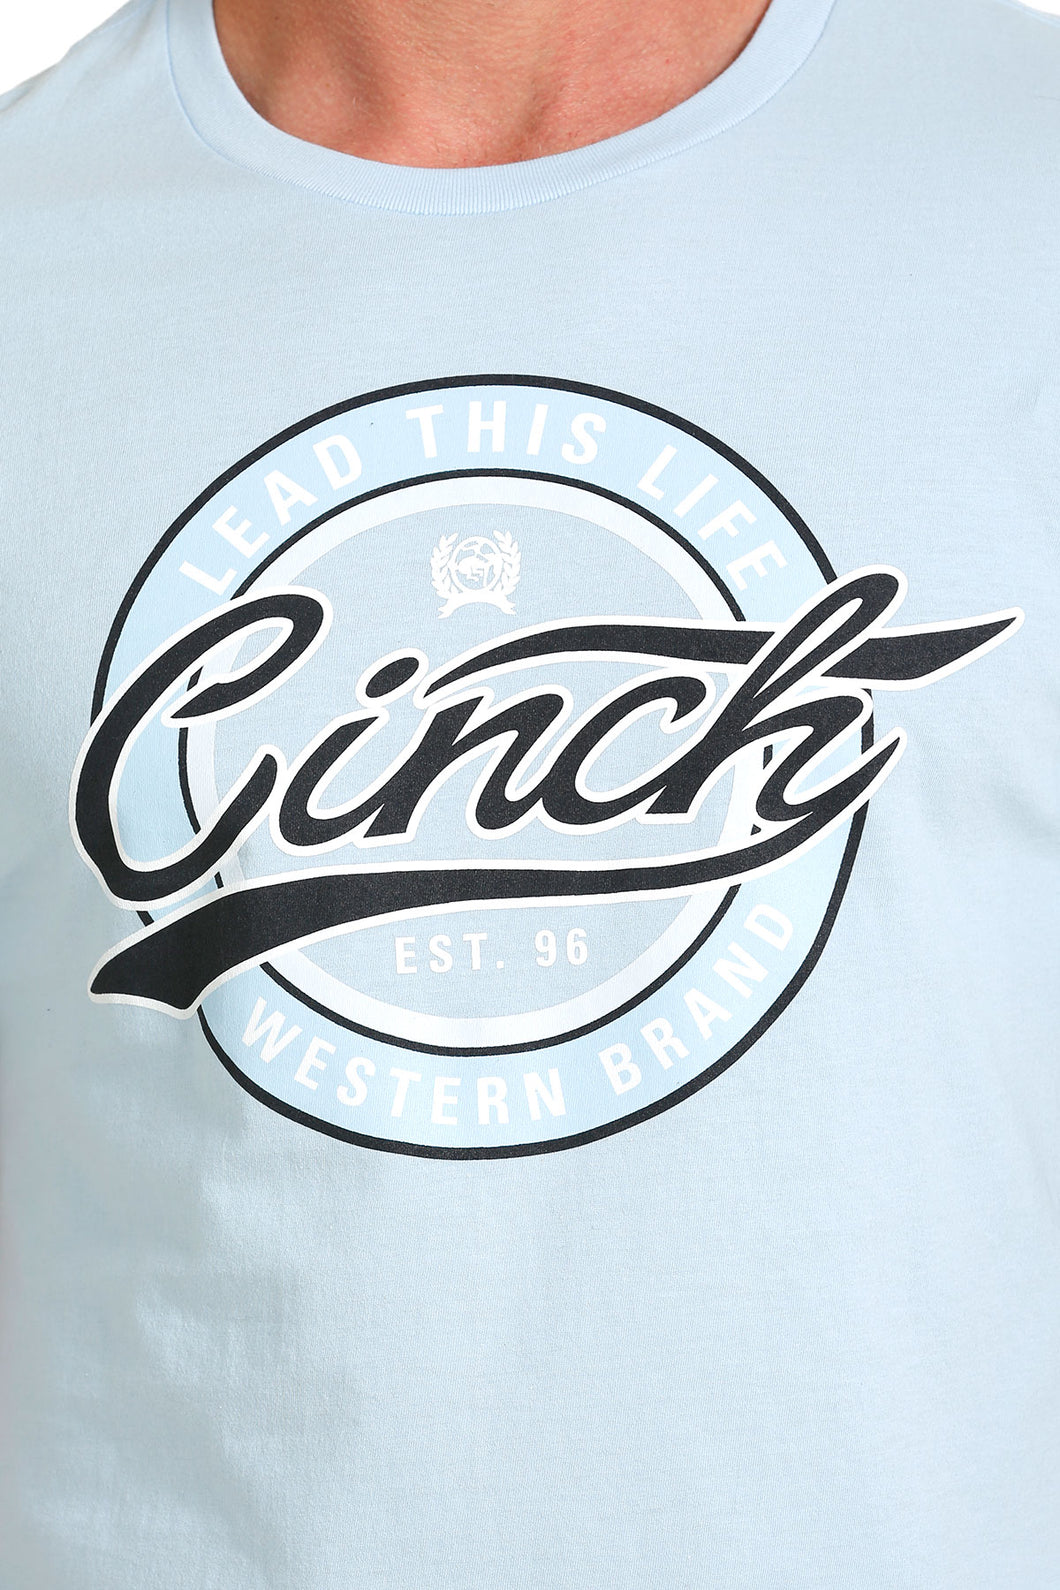 Cinch Men's Light Blue Cinch Logo T-Shirt